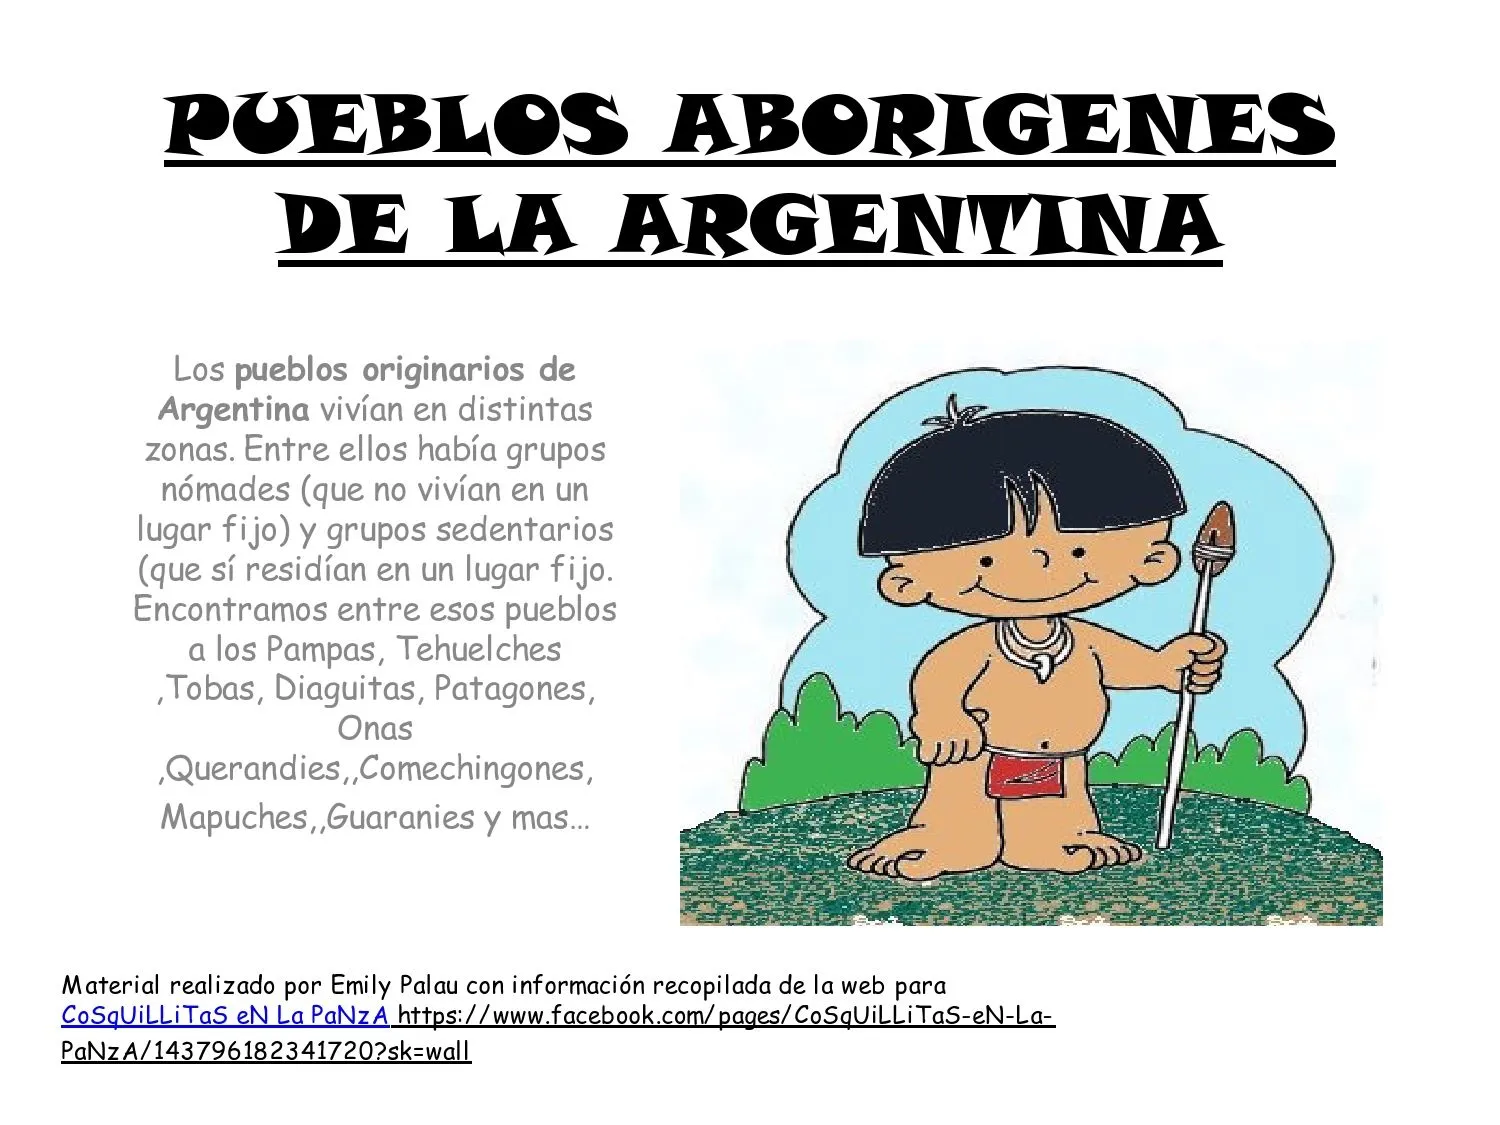 CoSqUiLLiTaS eN La PaNzA BLoGs: PUEBLOS ABORÍGENES DE LA ARGENTINA